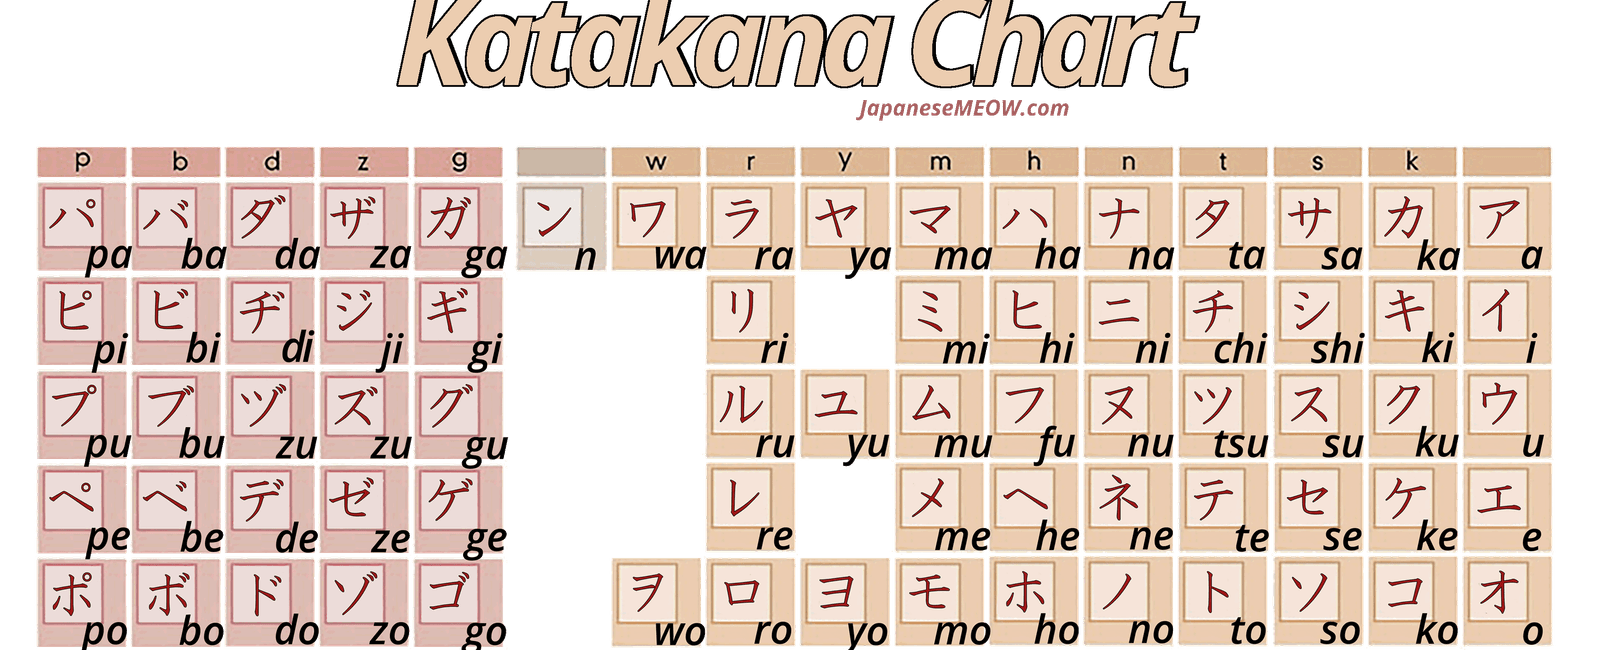 Japanese uses three different writing systems kanji katakana and hiragana